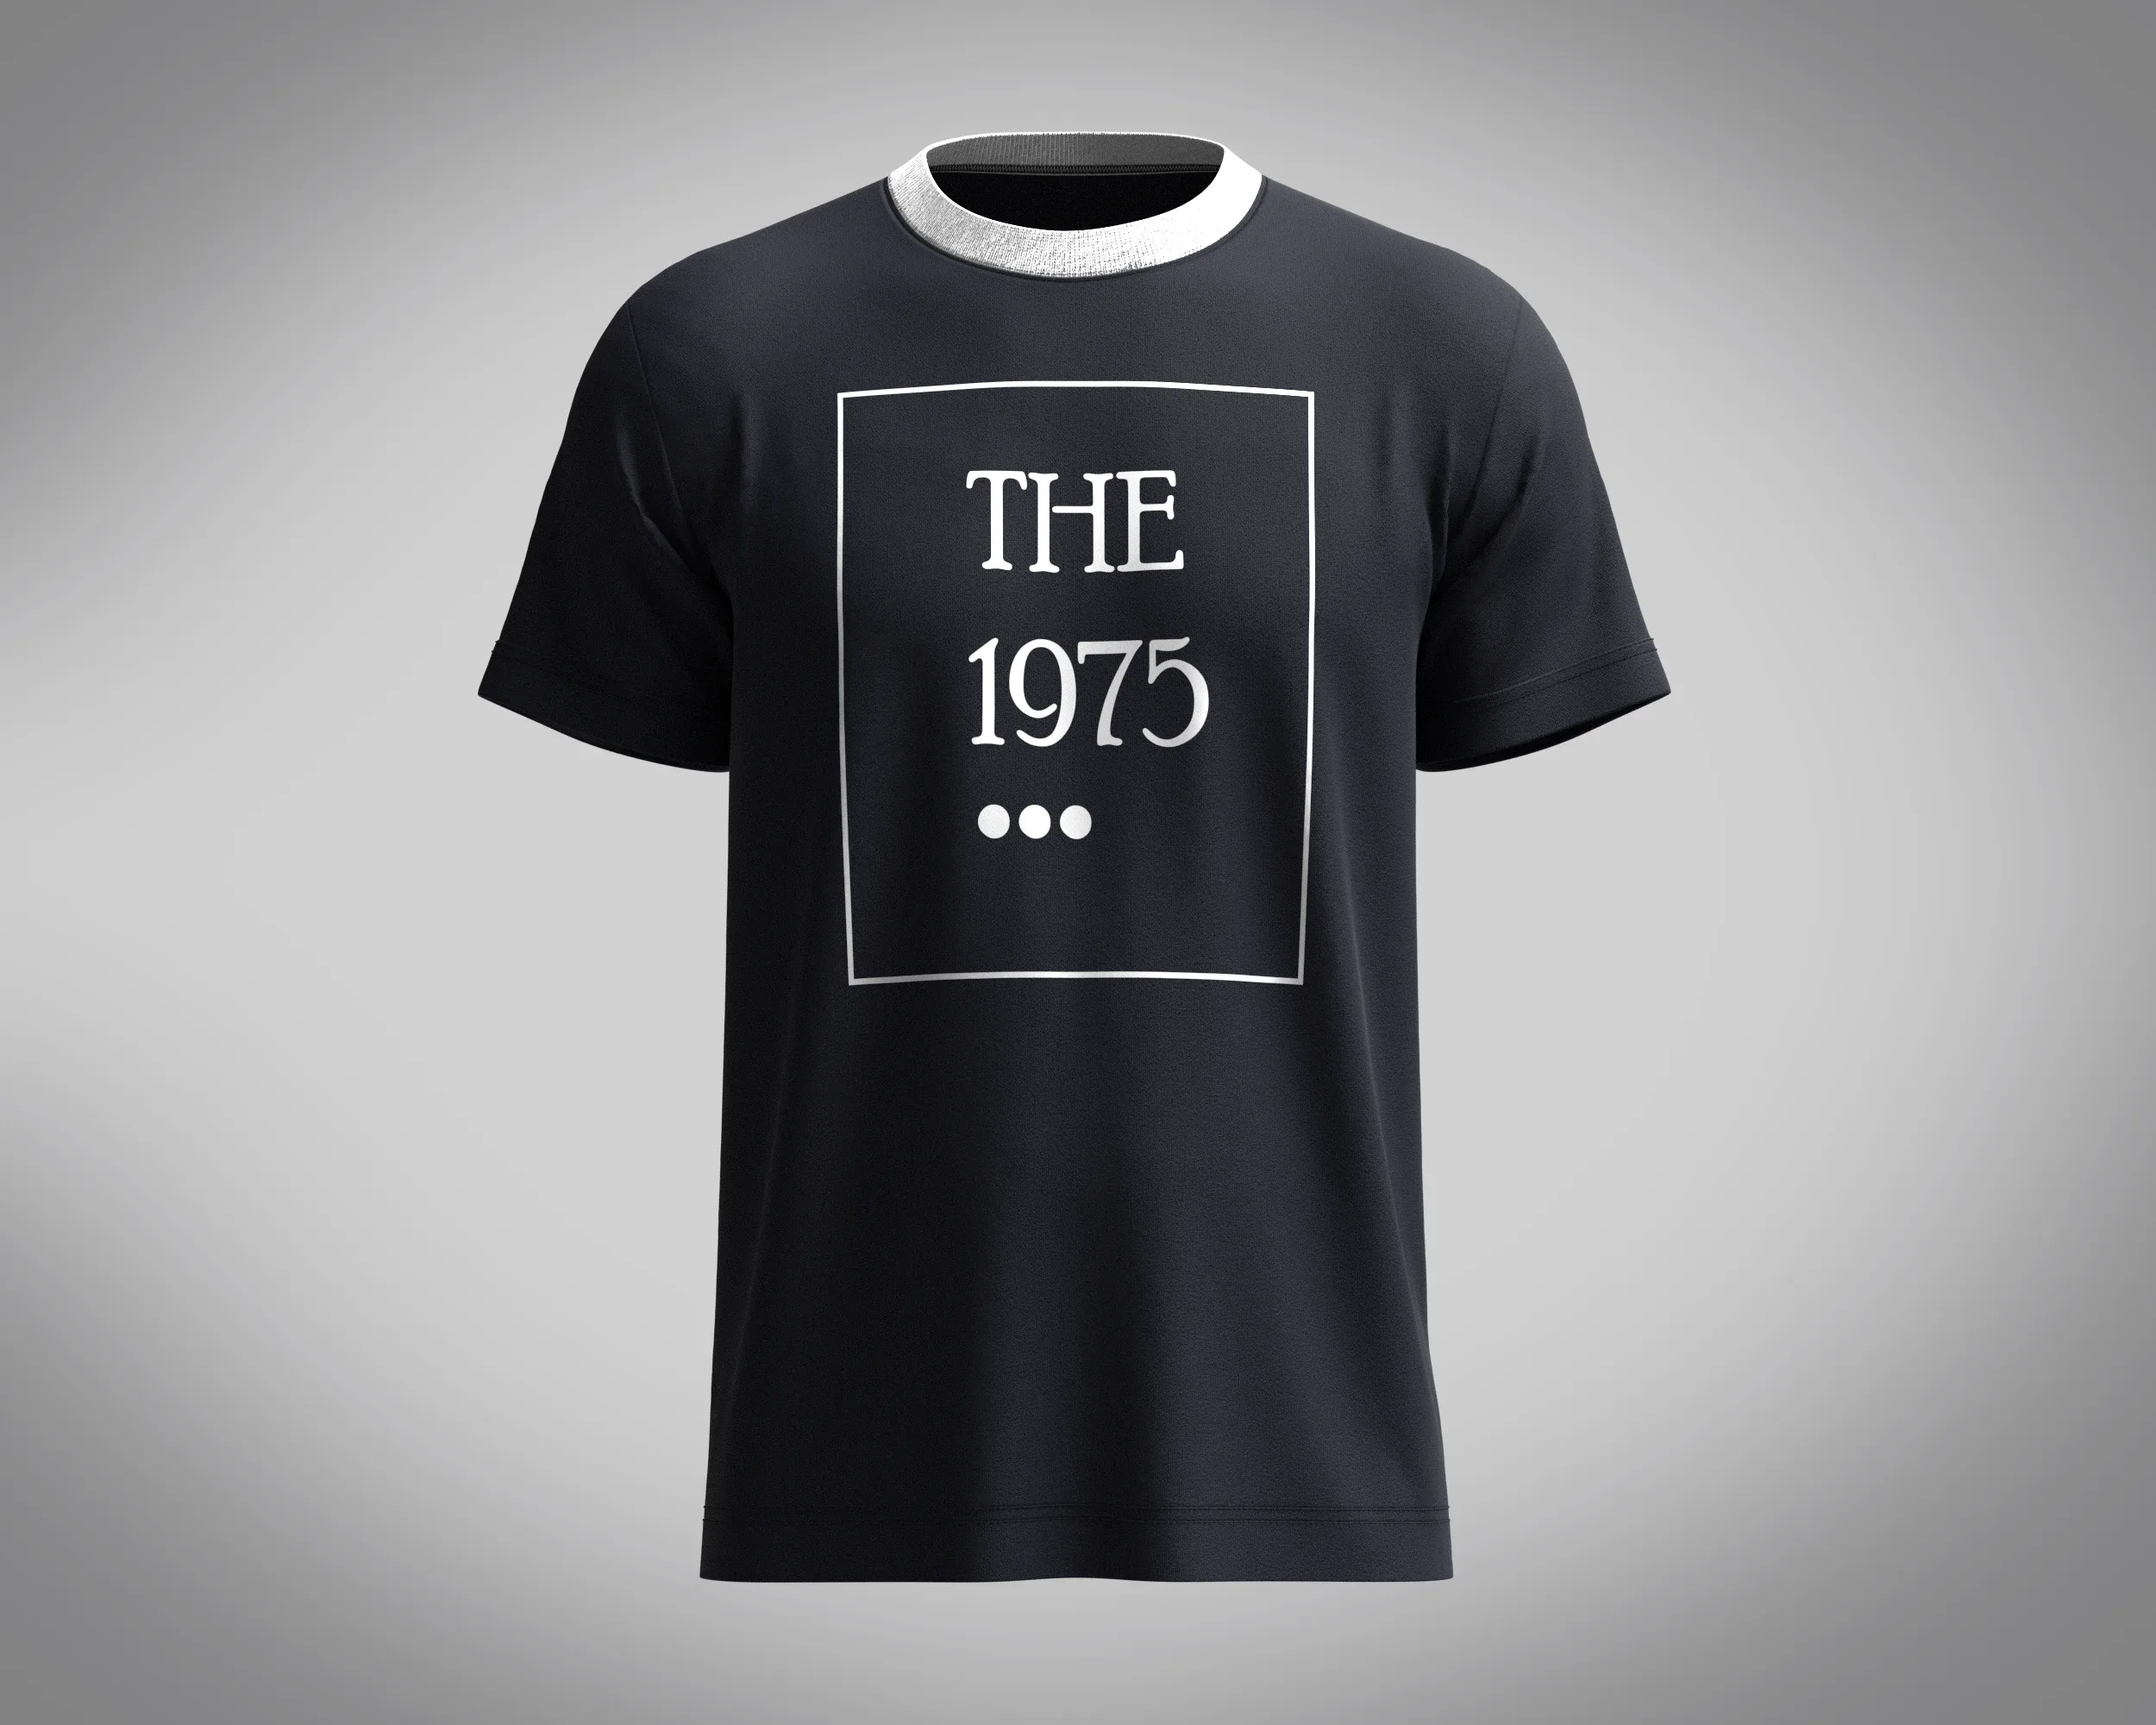 T-Shirt - The 1975 | Marvelous / Clo3d / obj / fbx